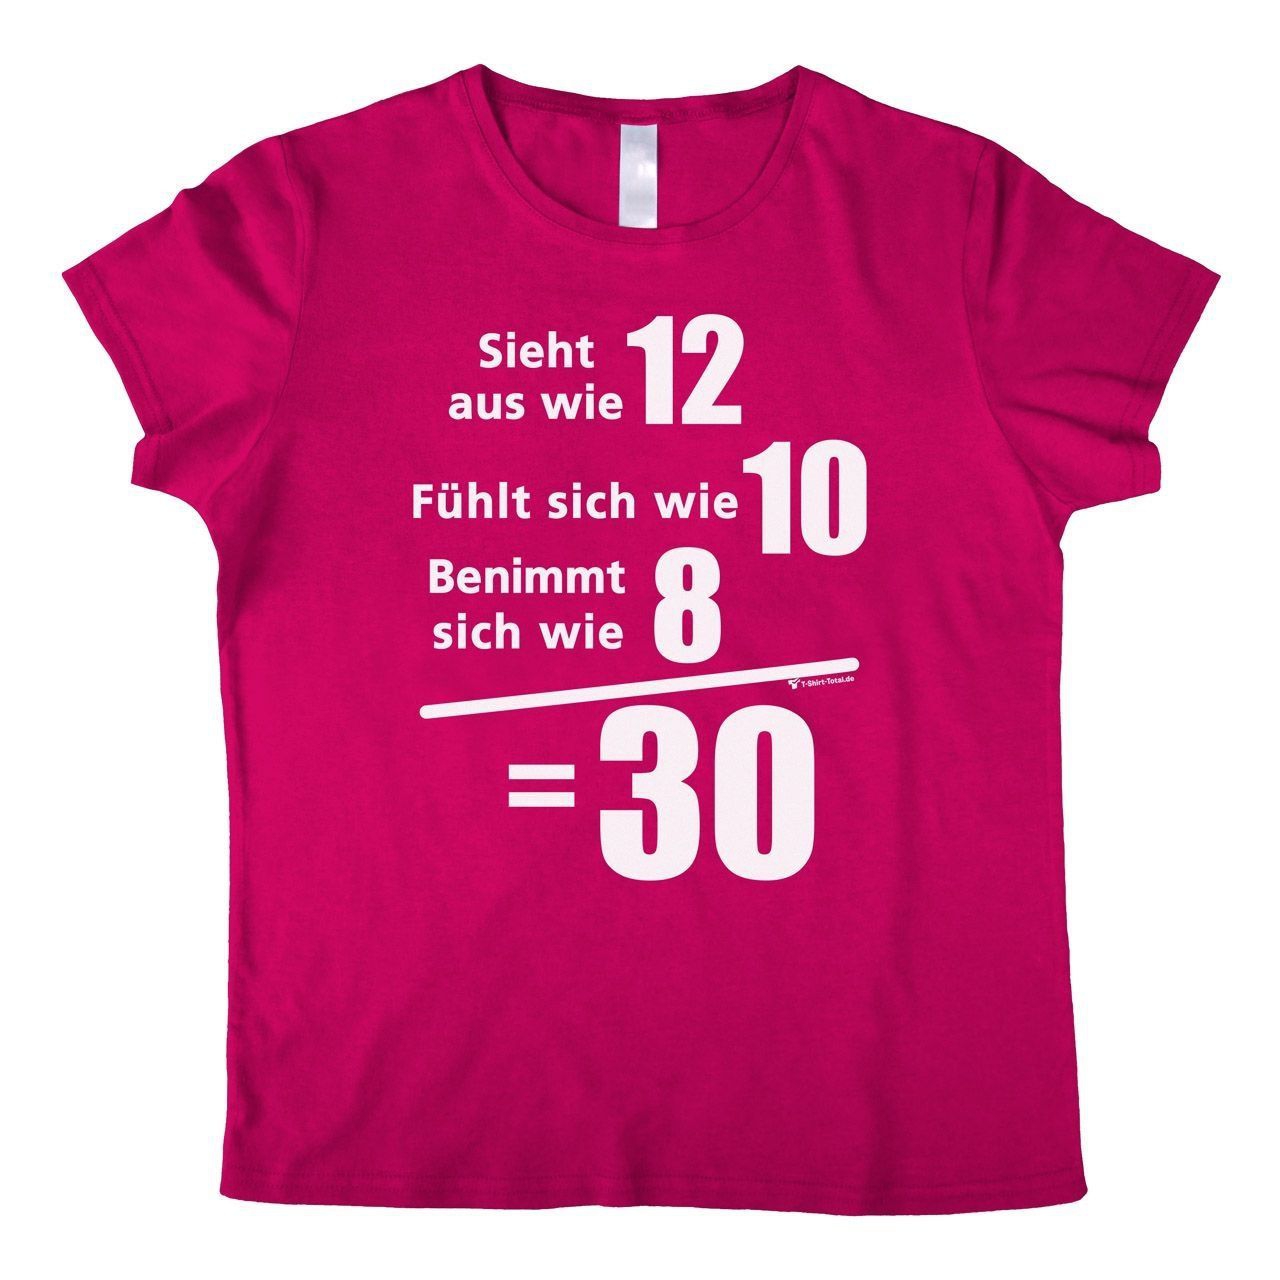 Sieht aus wie 12 Woman T-Shirt pink Small